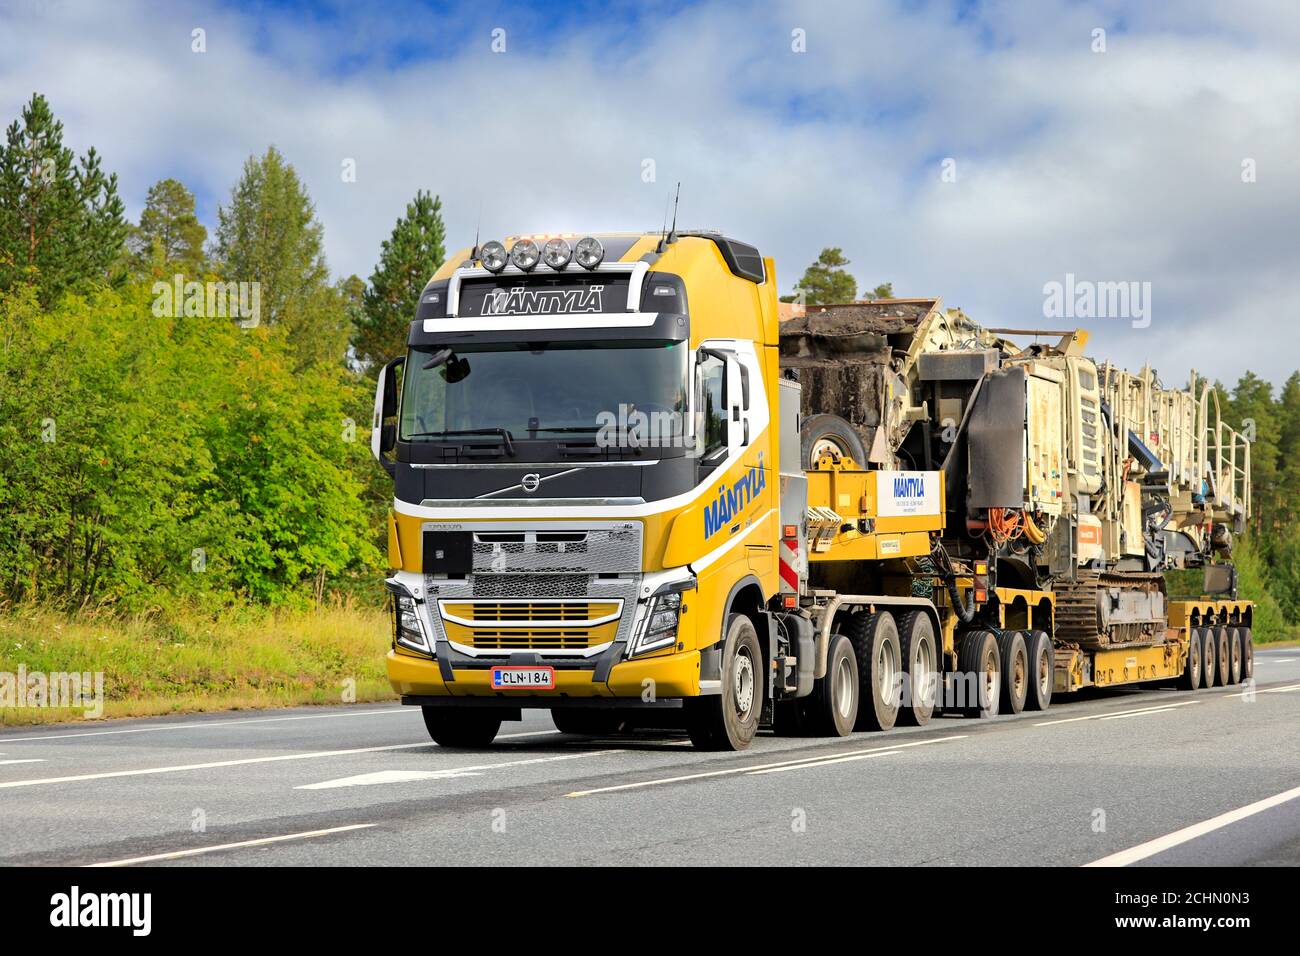 Remorque semi-remorque jaune Volvo FH16 Mantyla E&E Ky transporte l'usine de criblage mobile Lokotrack et de concassage en charge large. Forssa, Finlande. 11 septembre 2020. Banque D'Images